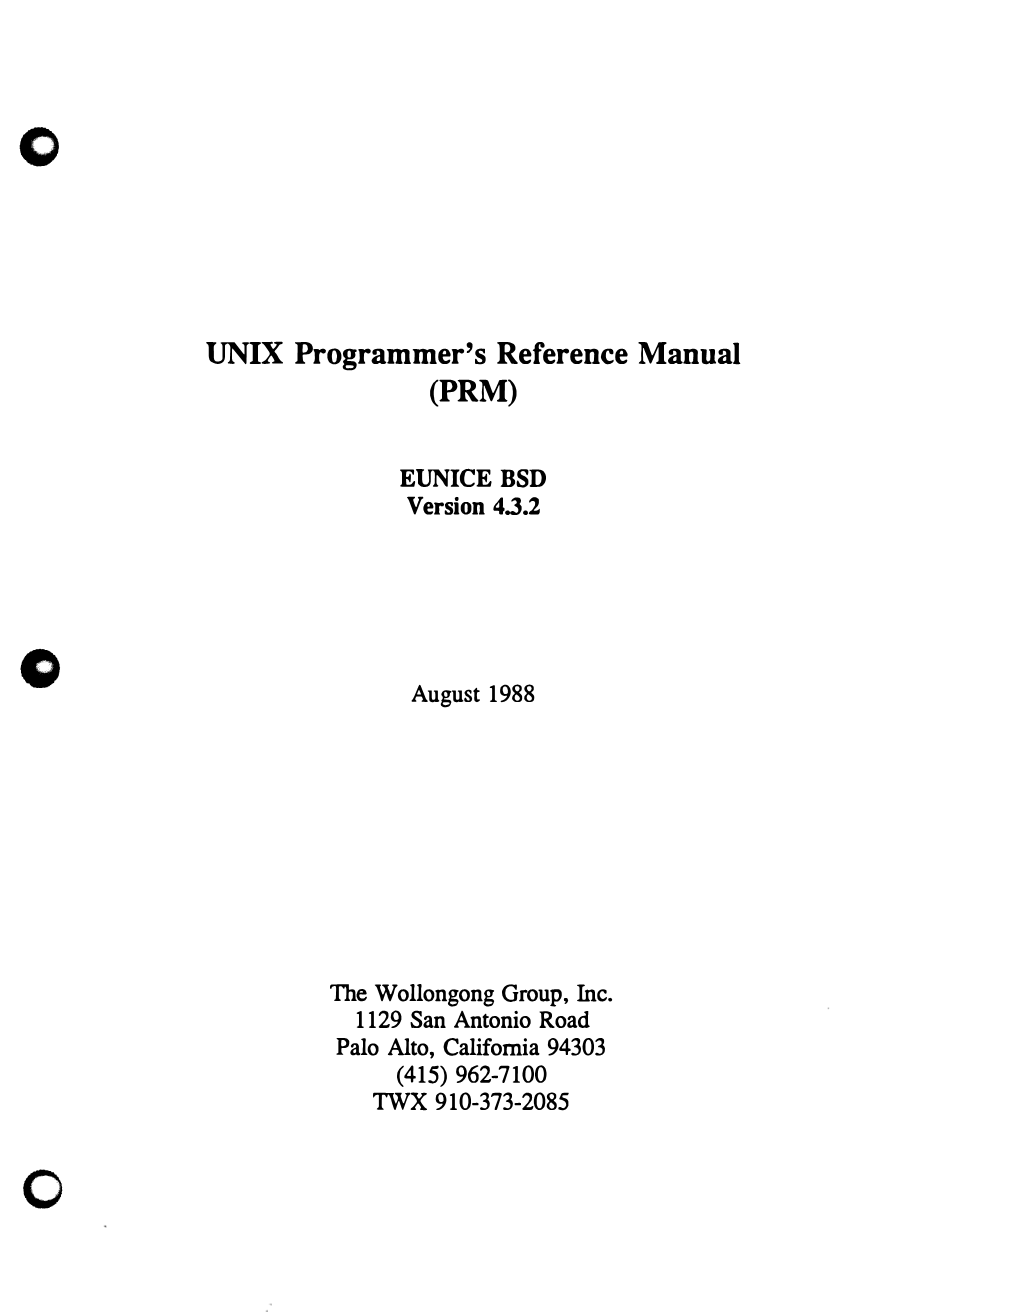 UNIX Programmer's Reference Manual (PRM) Eunice BSD Version